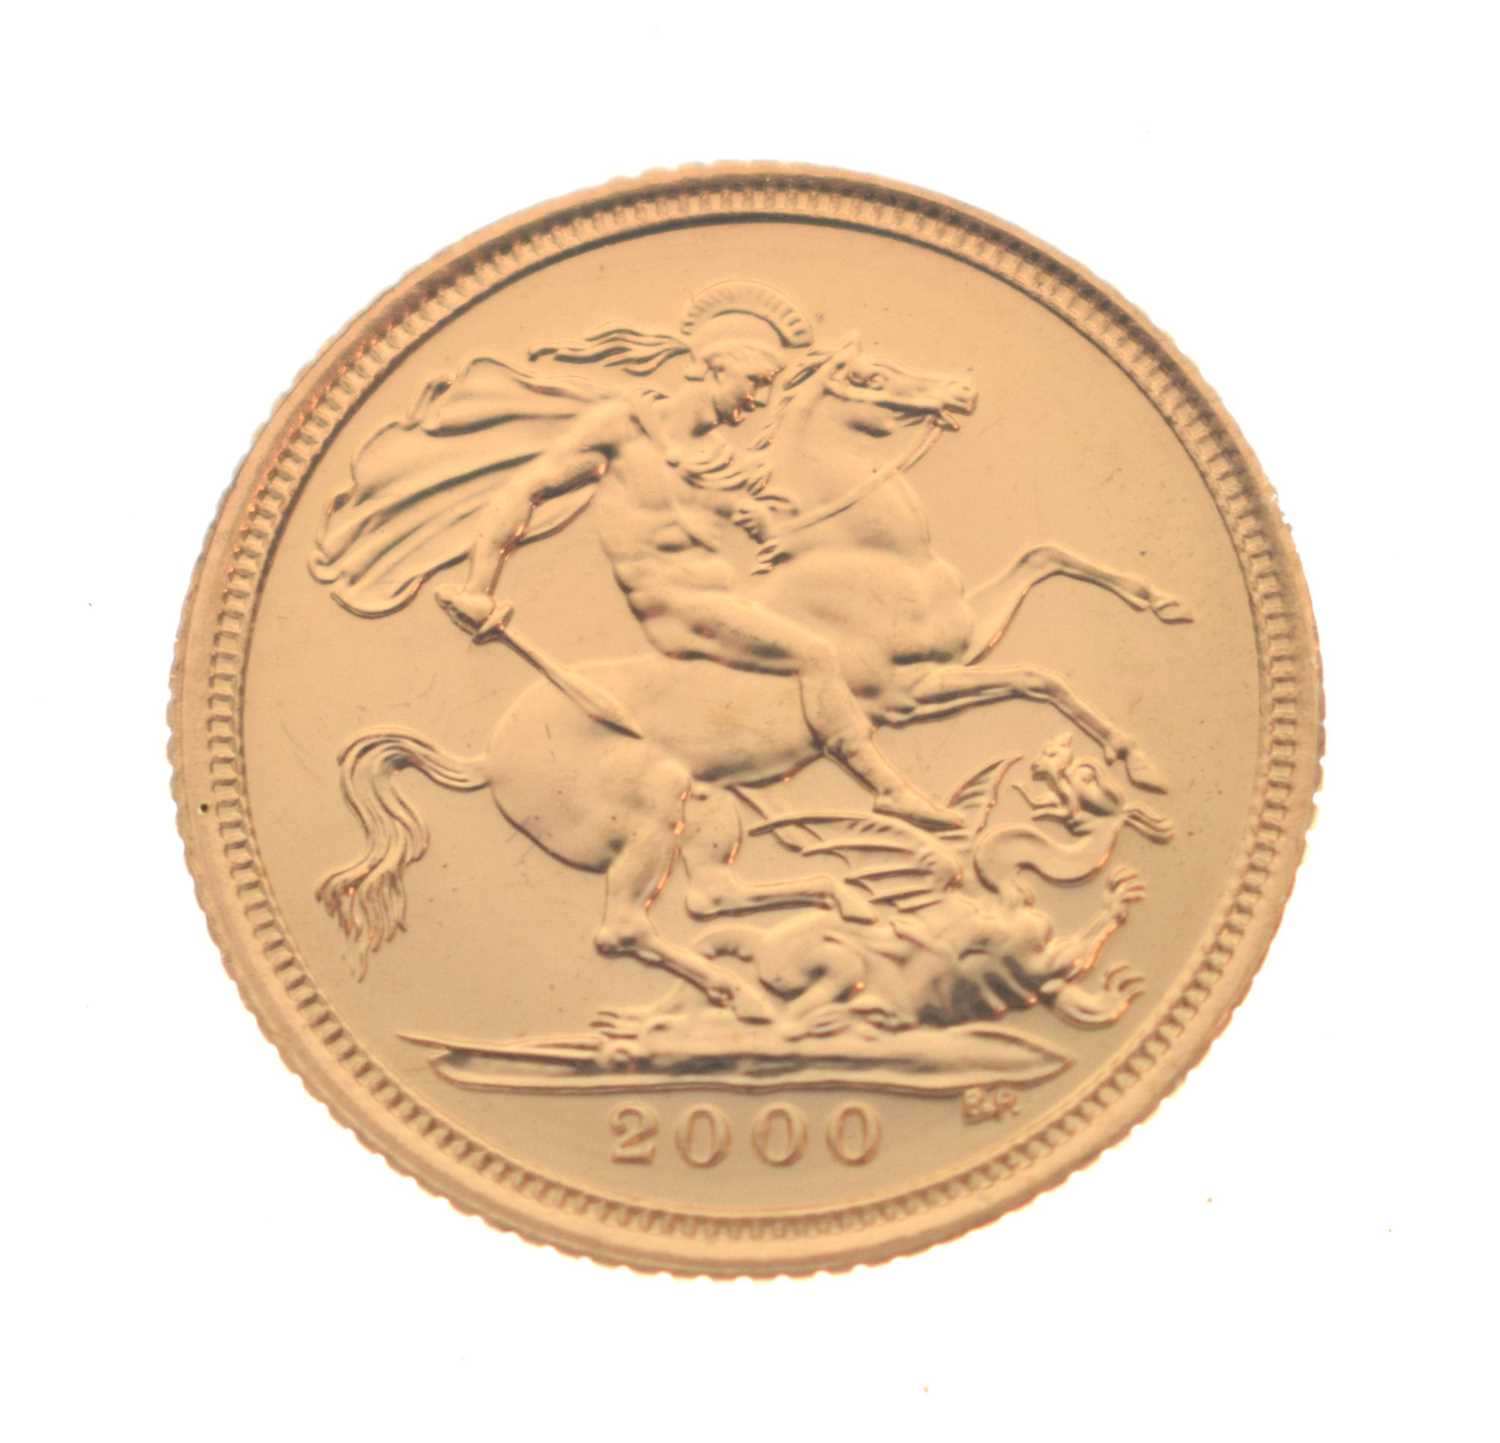 Royal Mint - Elizabeth II proof gold half sovereign, 2000